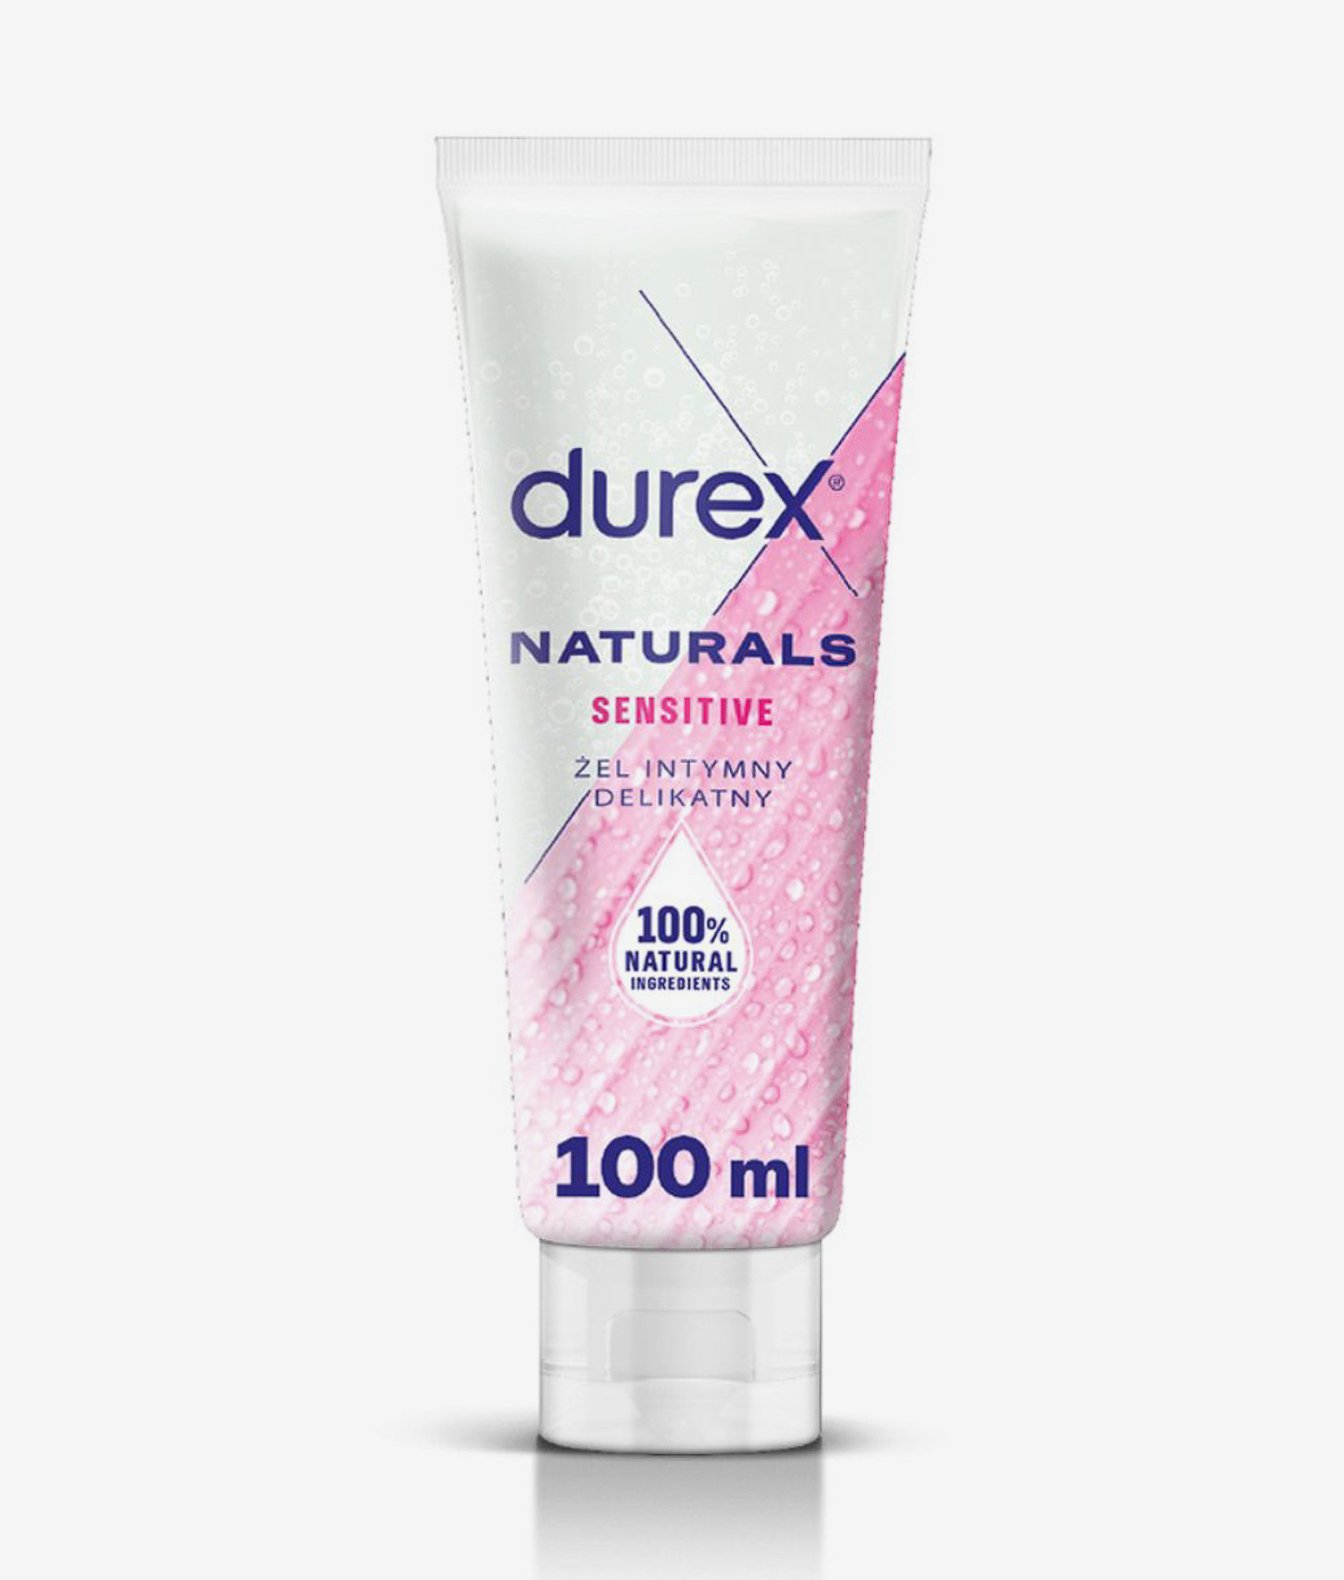 Durex Naturals Sensitive żel intymny